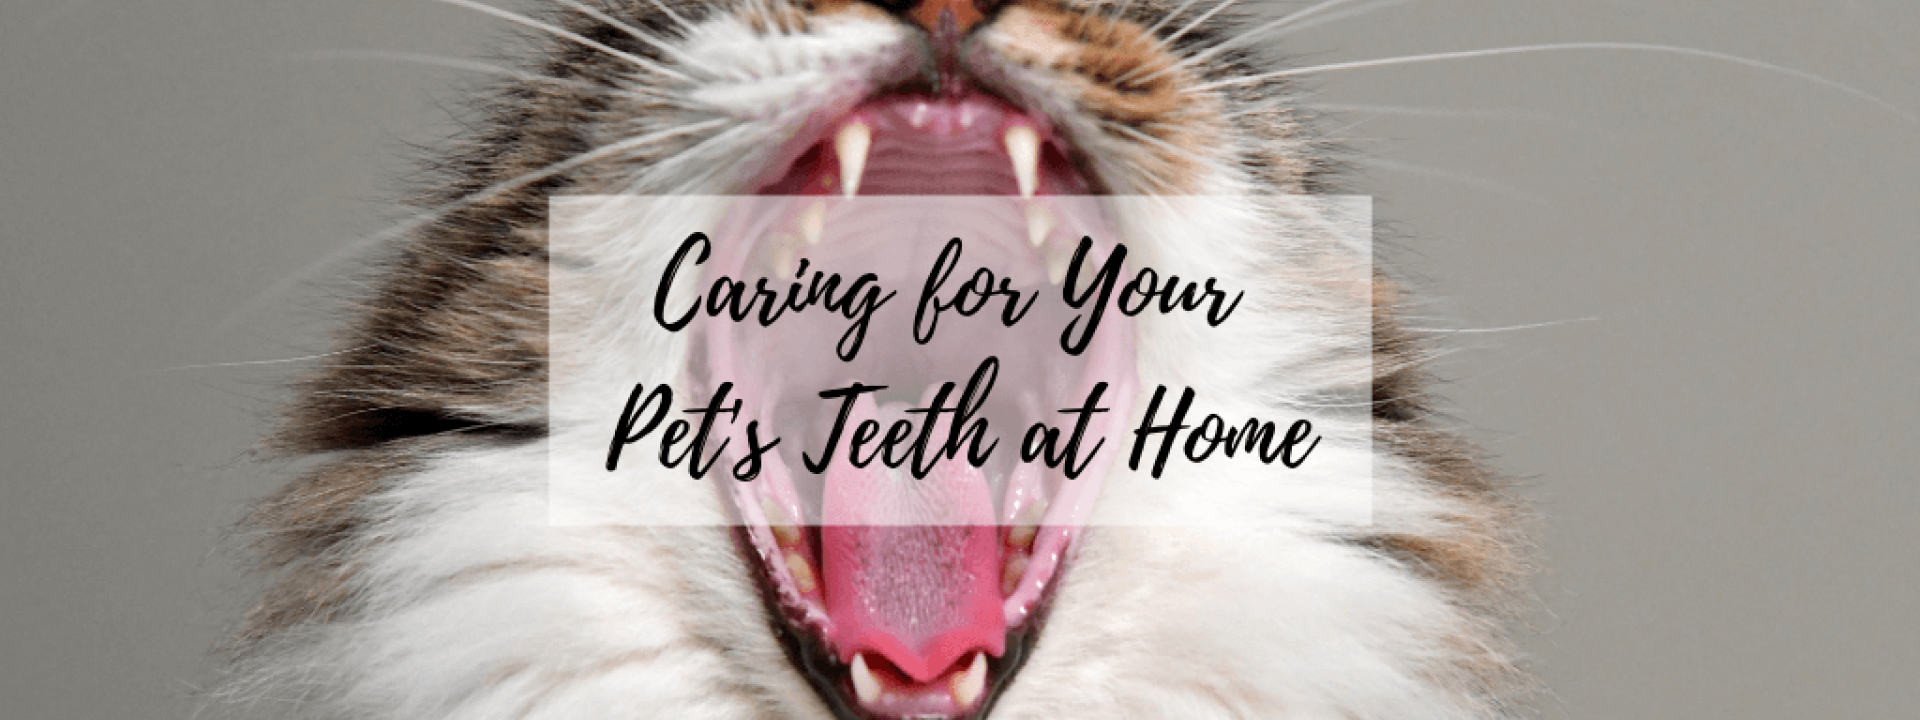 Dental-home-care-blog-header.png